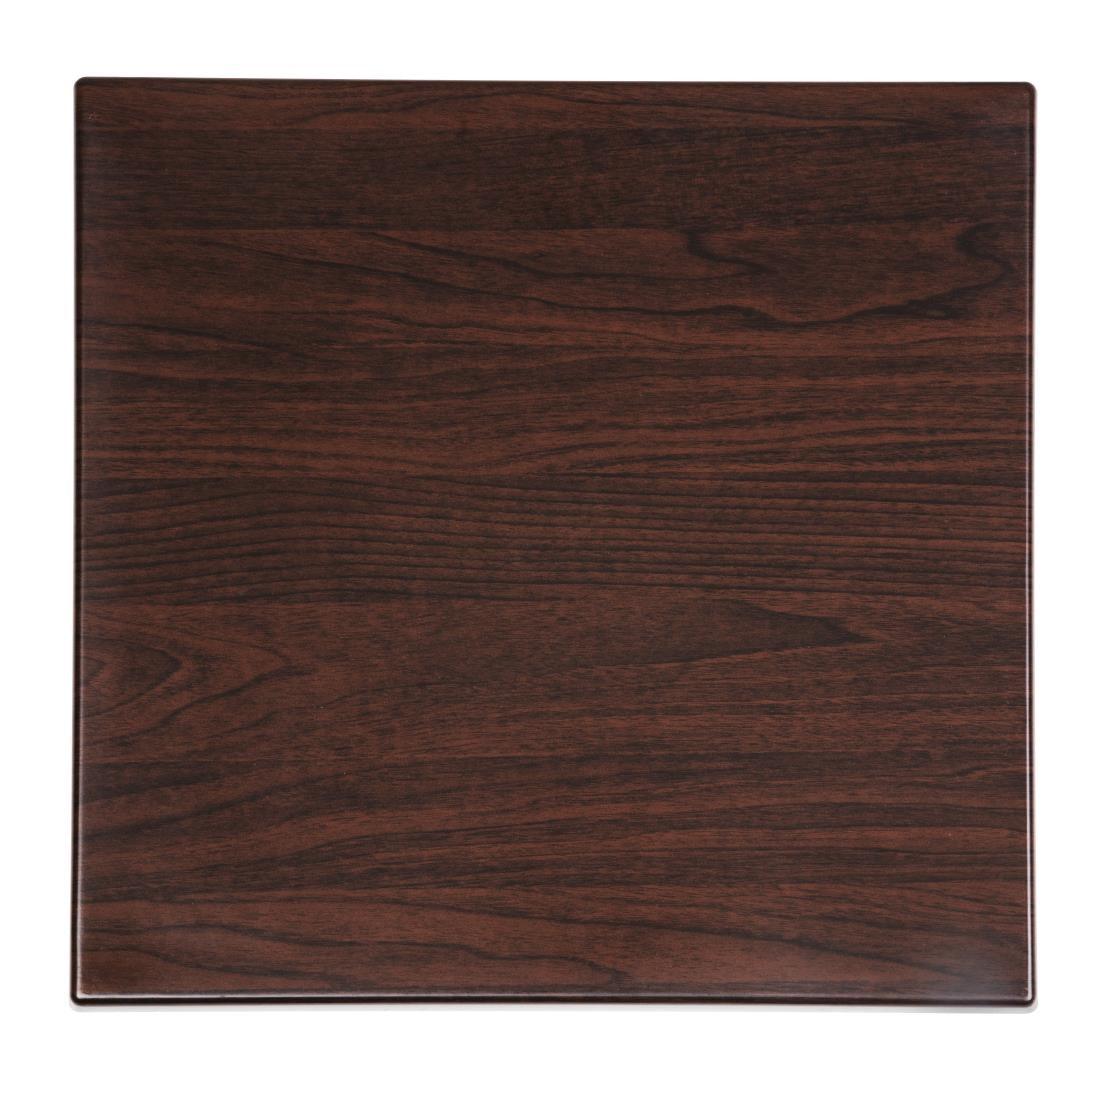 Bolero GG635 Bolero Square 600mm Table Top (Dark Brown) - HospoStore